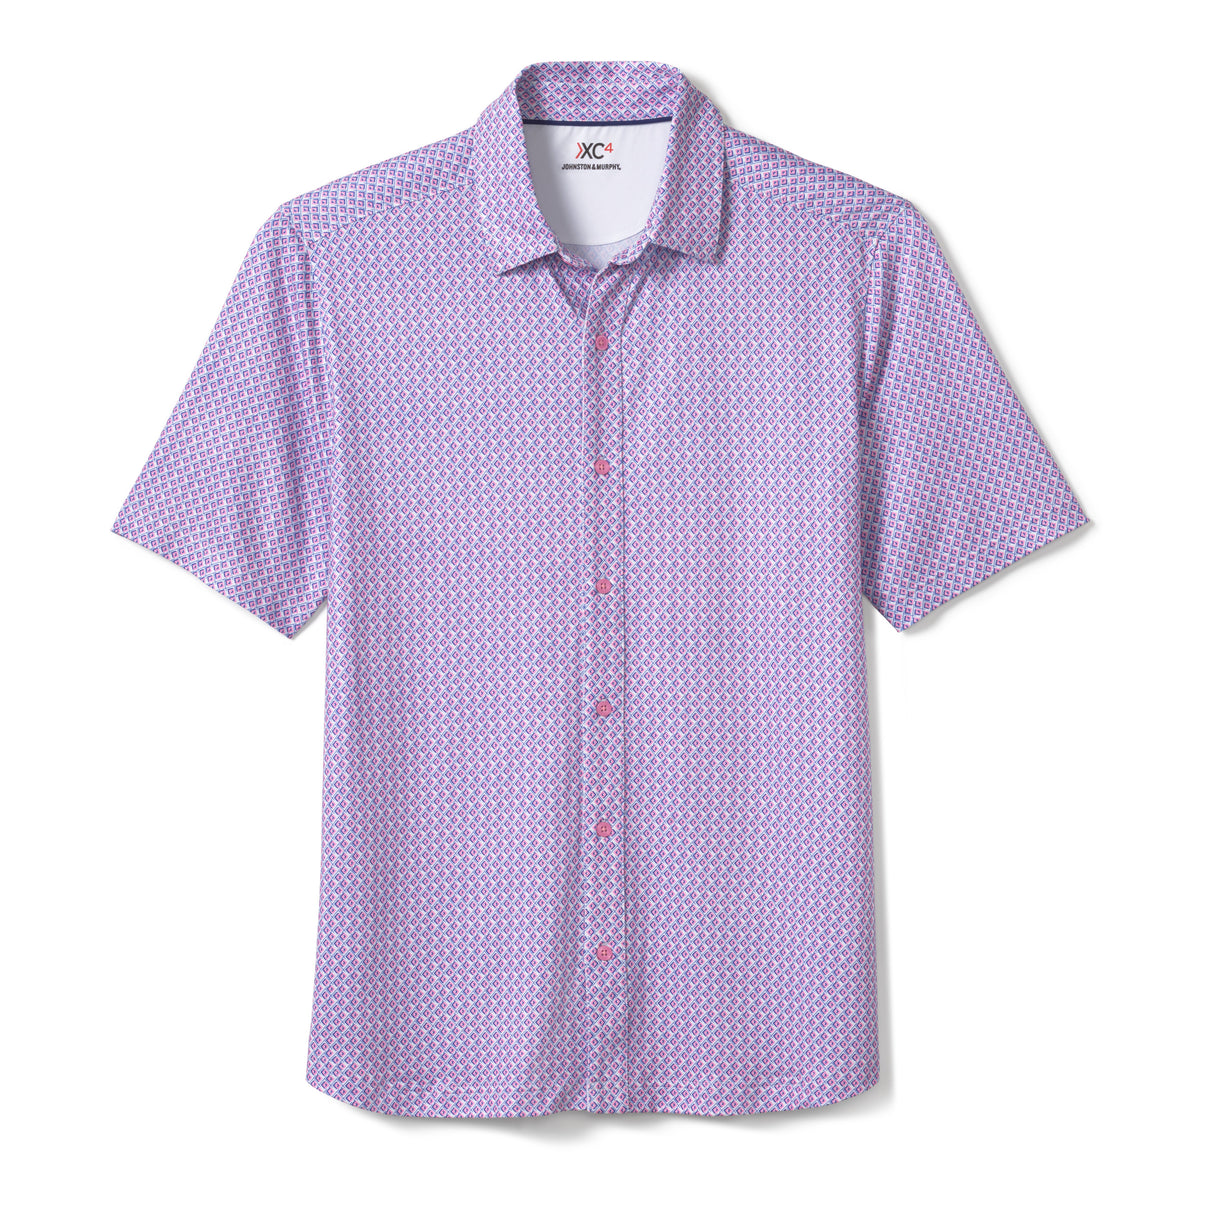 74-5677 XC4 Shirt-Pink Diamond by Johnston & Murphy